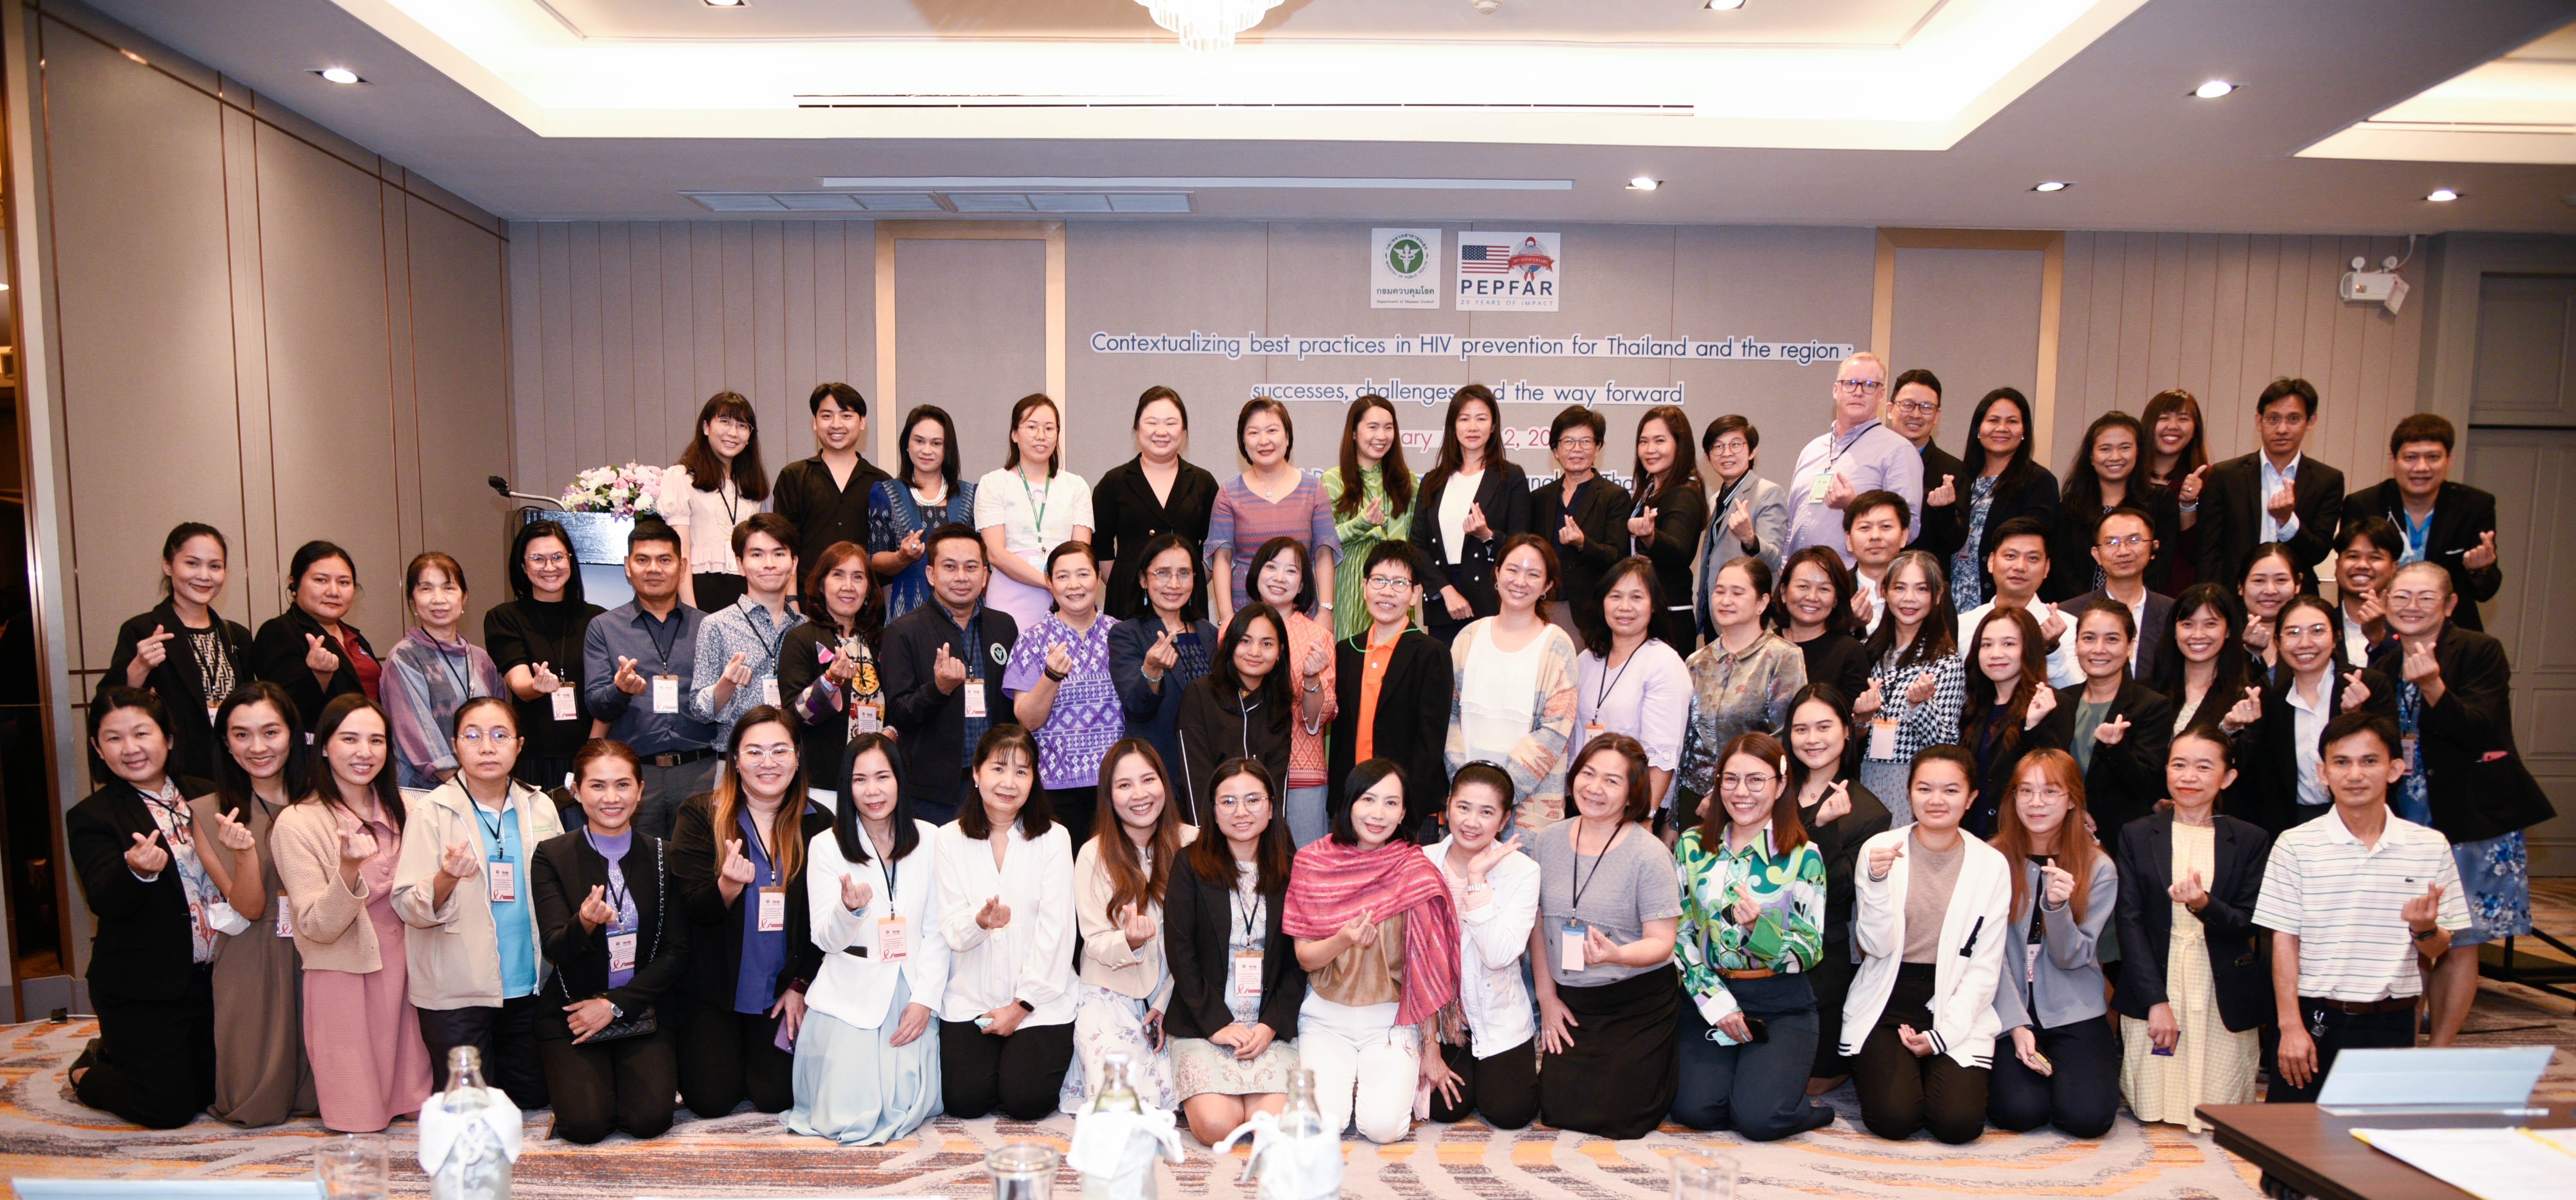 Des experts se réunissent en Thaïlande pour discuter des meilleures pratiques en matière de prévention du VIH